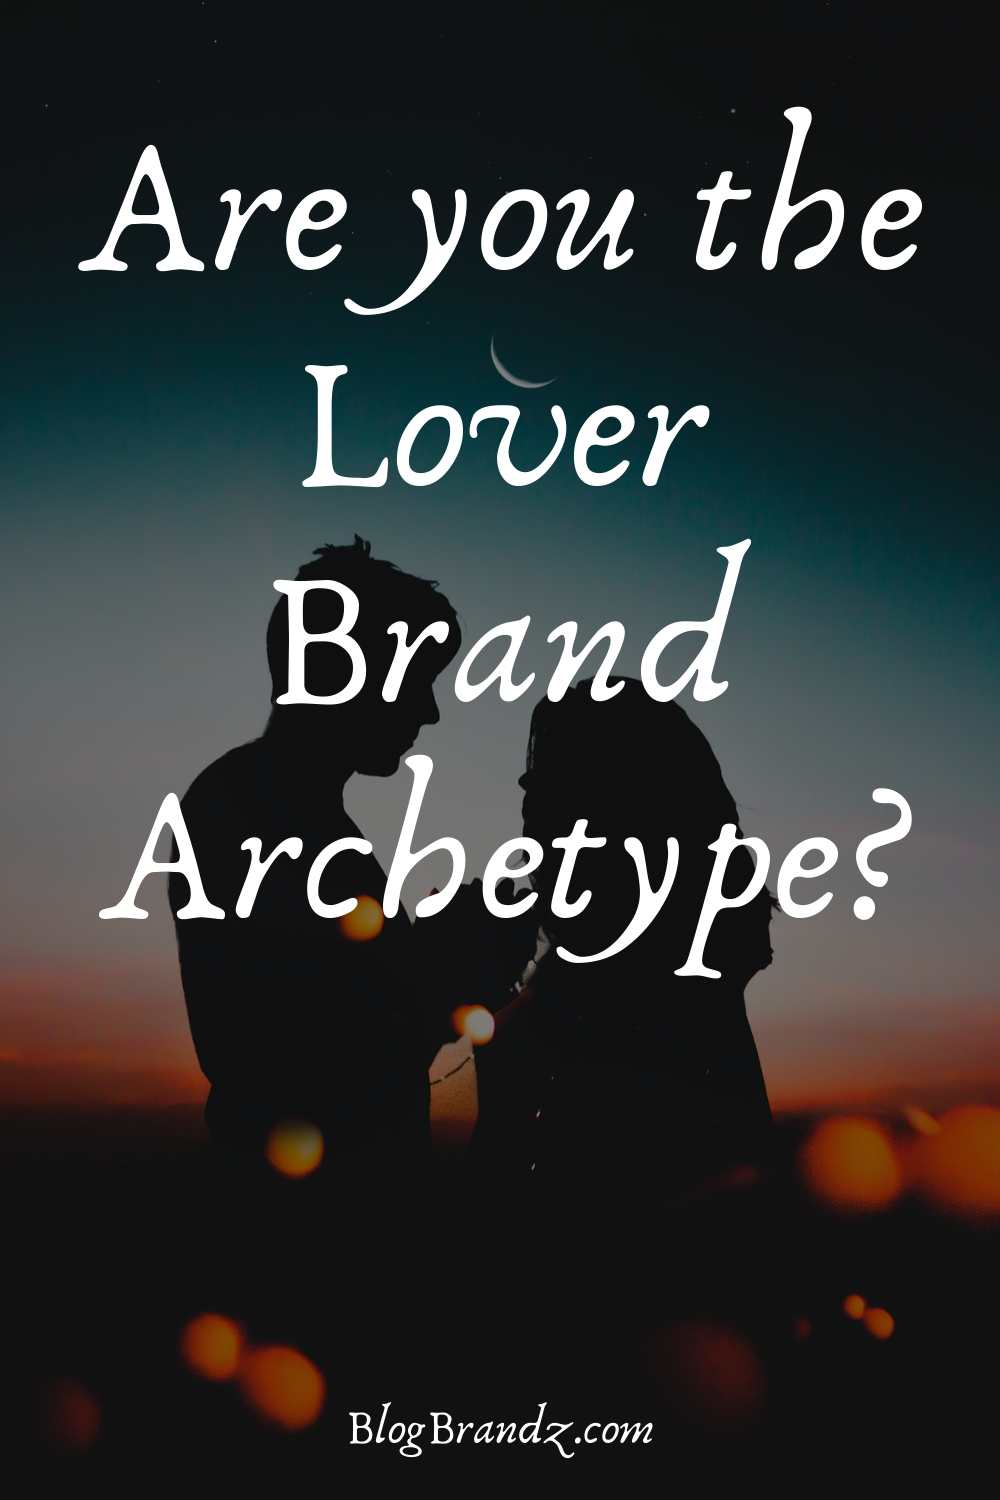 Brand Archetype Lover